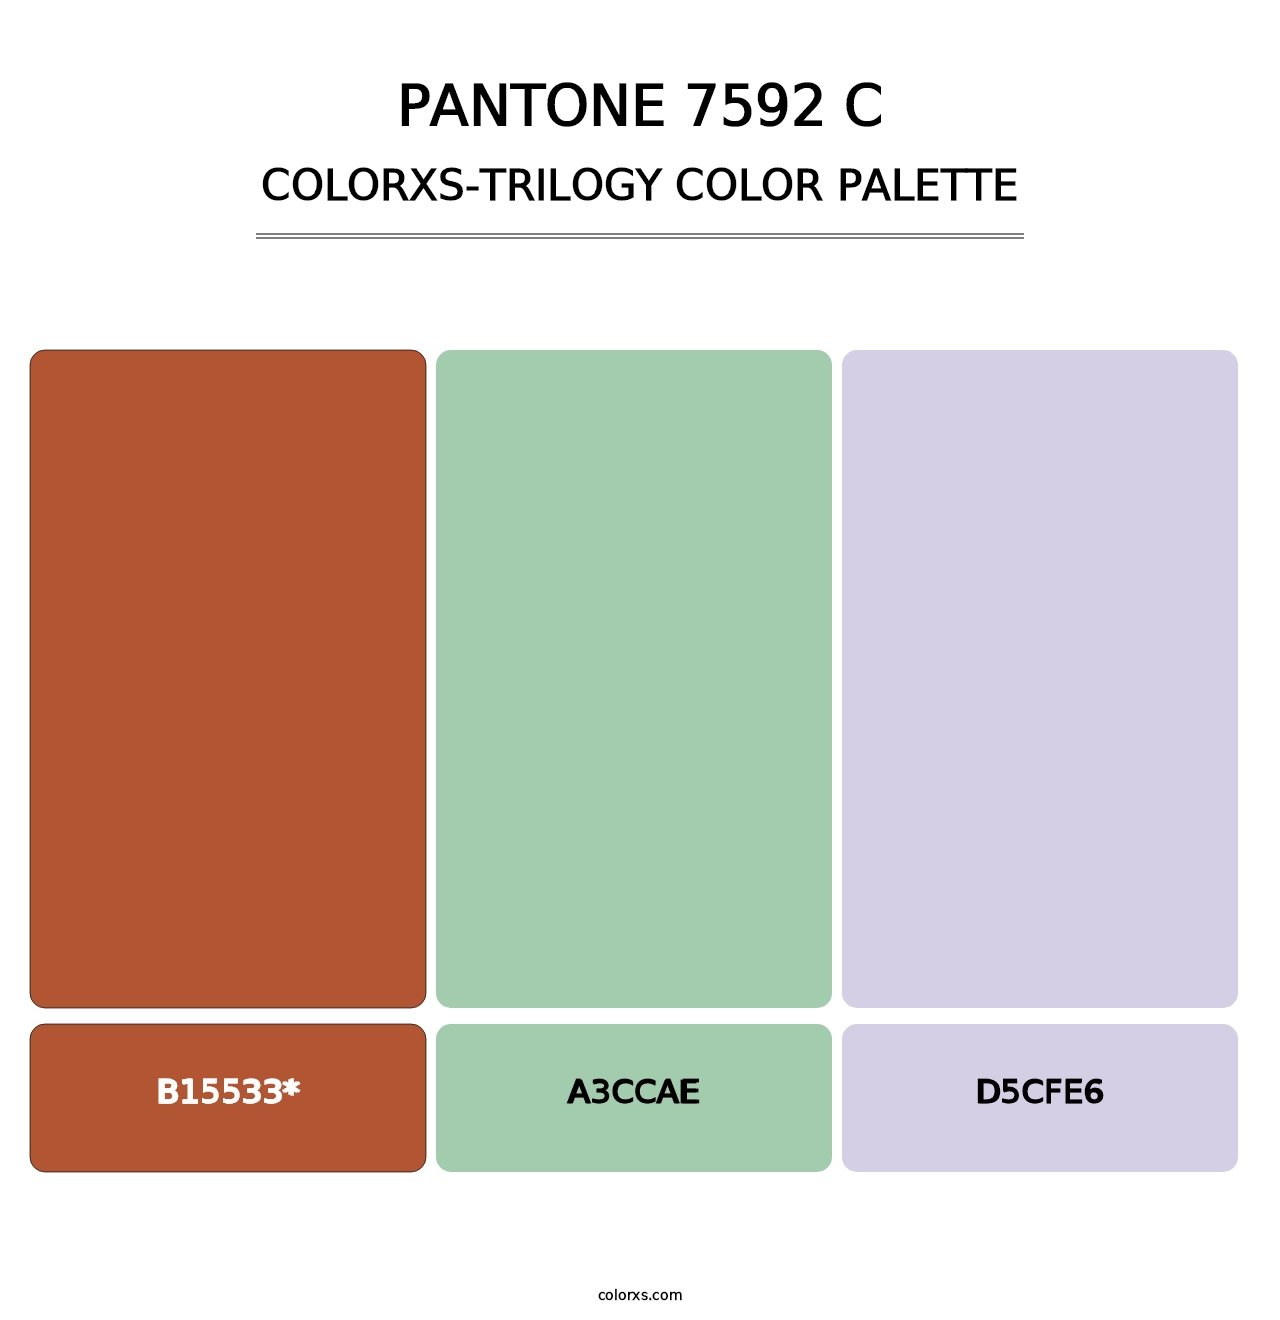 PANTONE 7592 C - Colorxs Trilogy Palette